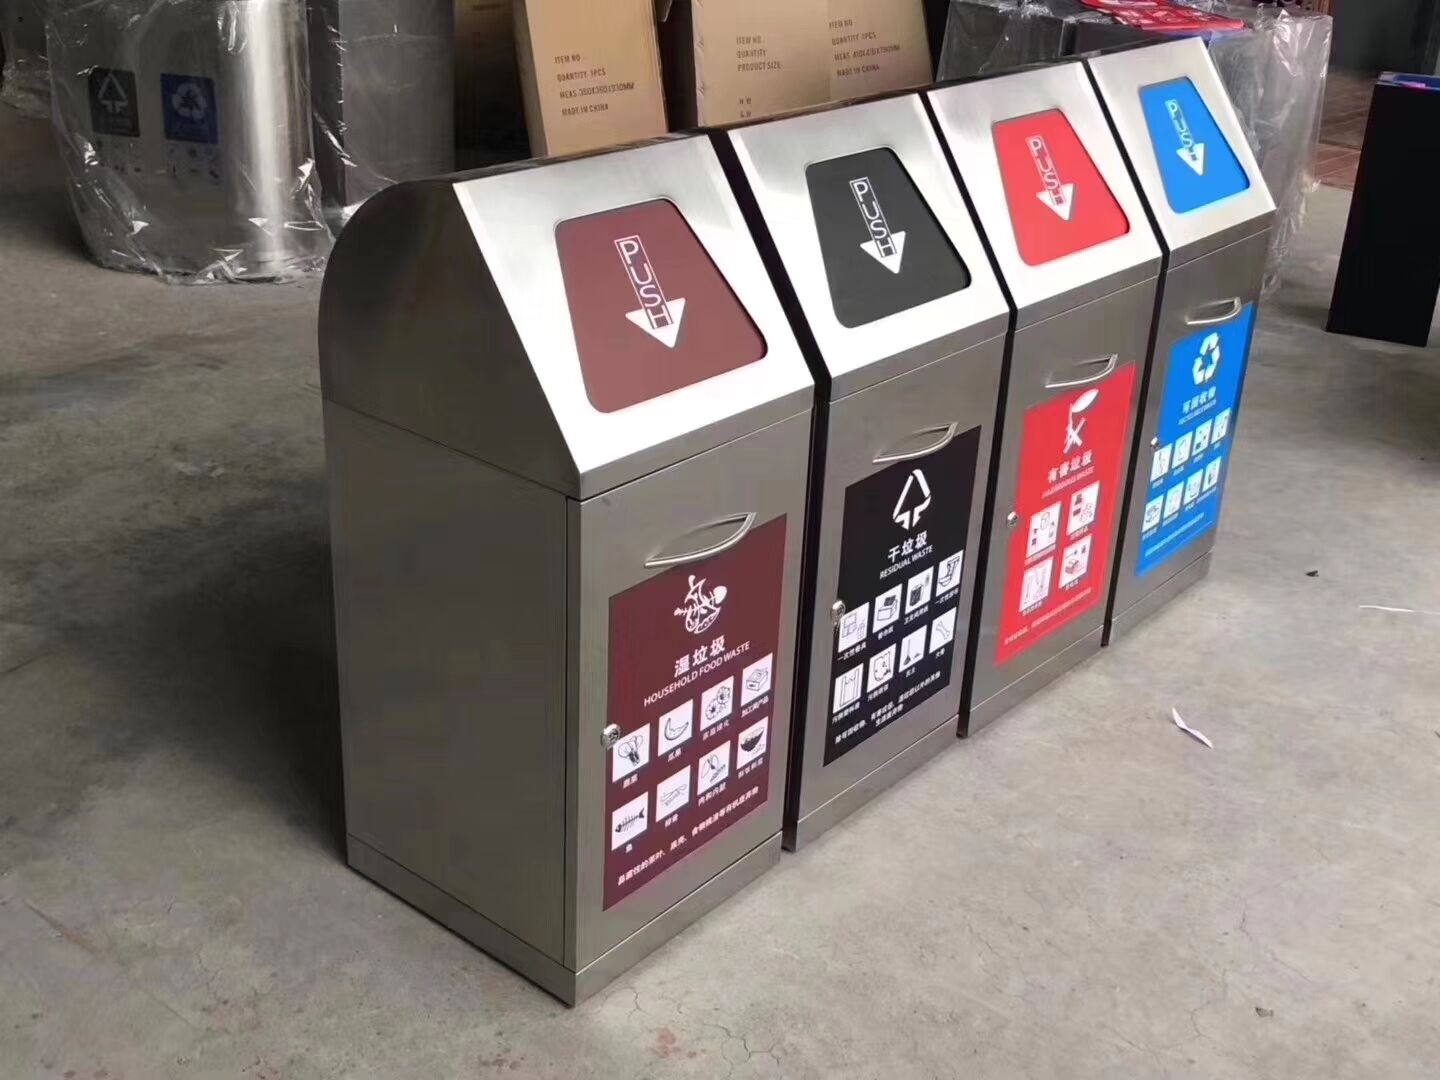 北京供应四色塑料分类垃圾桶 北京四色塑料分类垃圾桶